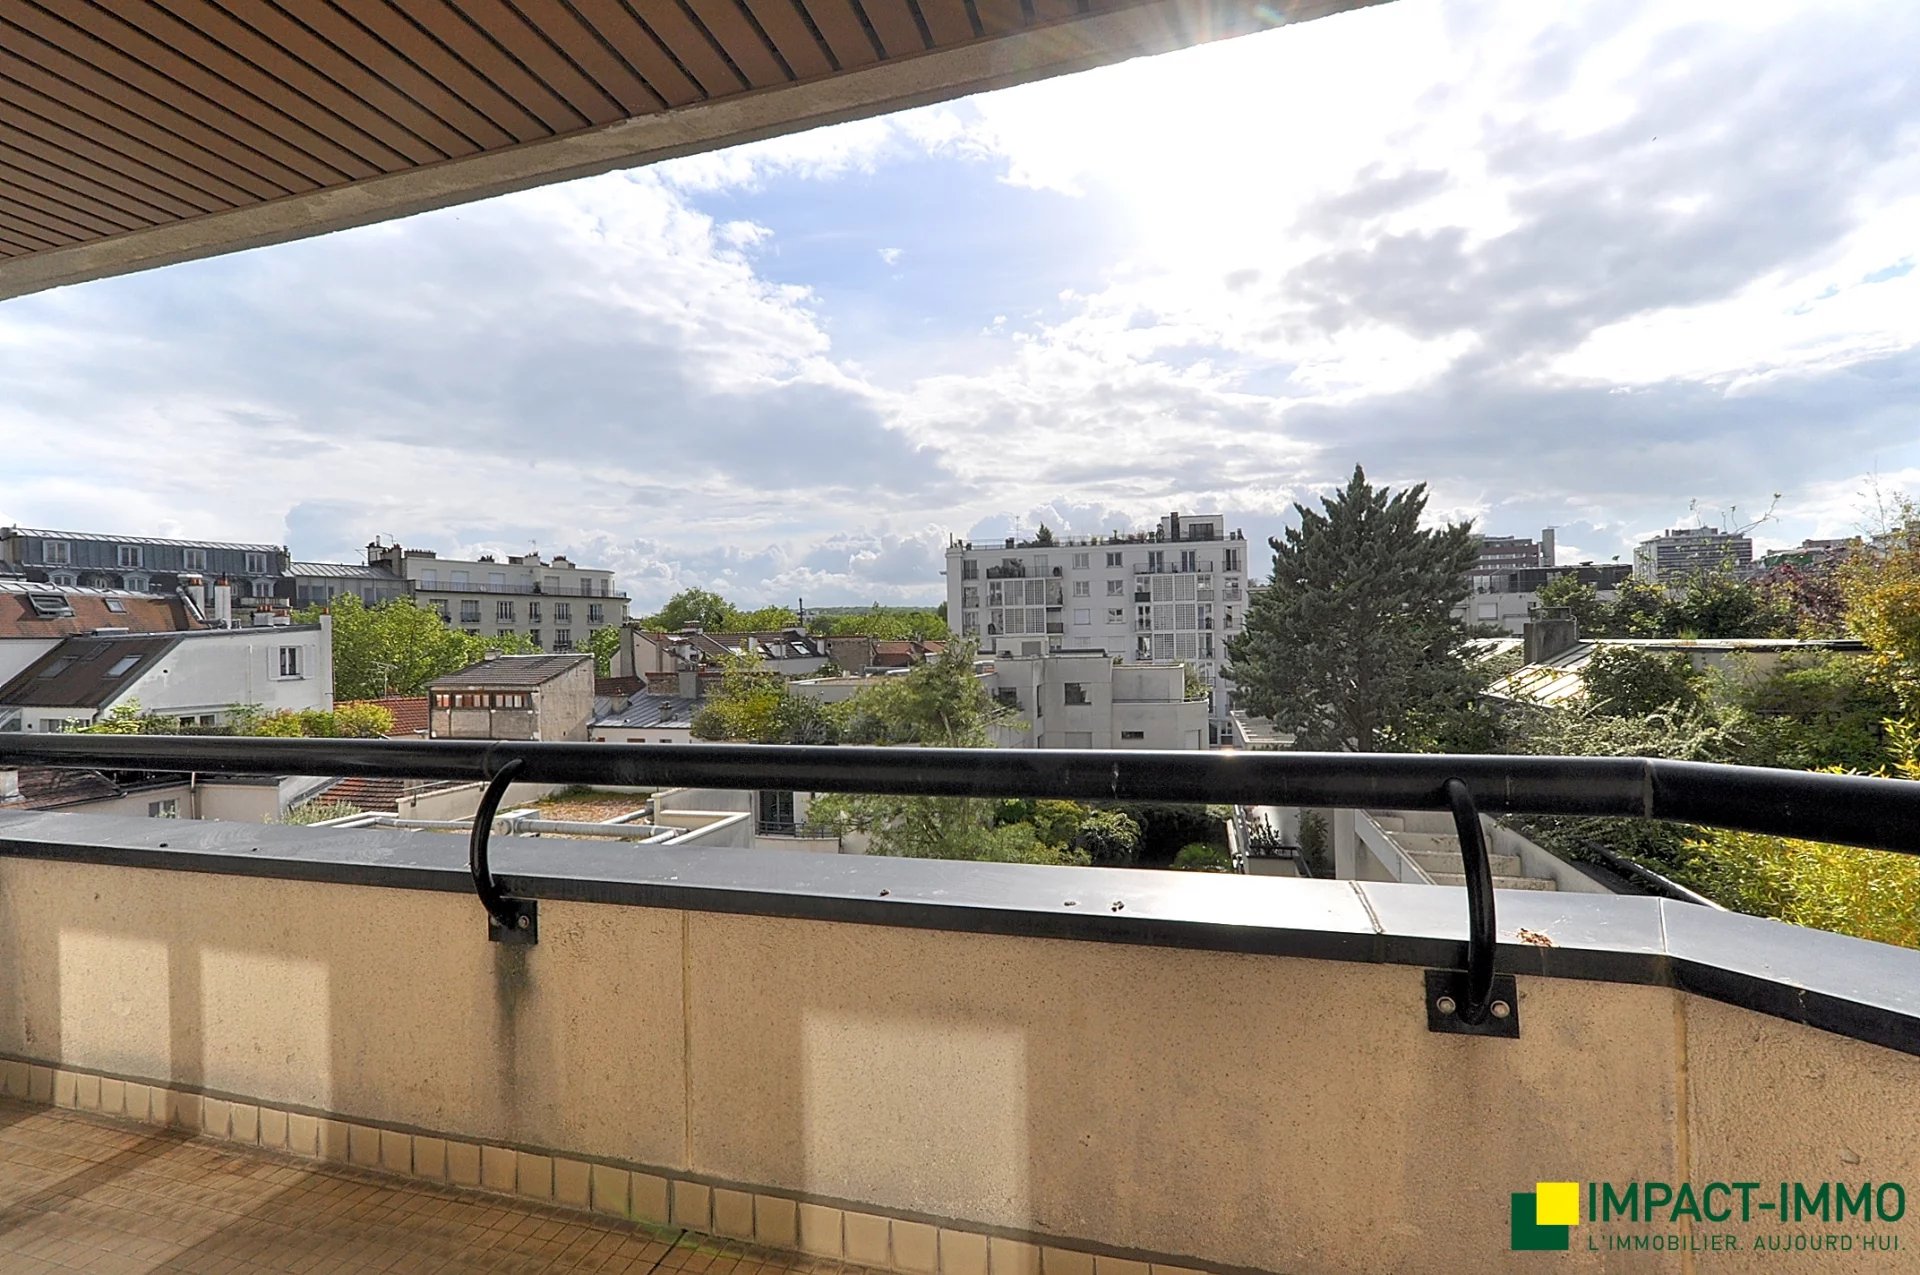 6 pièces, balcons, parking double boxé - Boulogne Nord